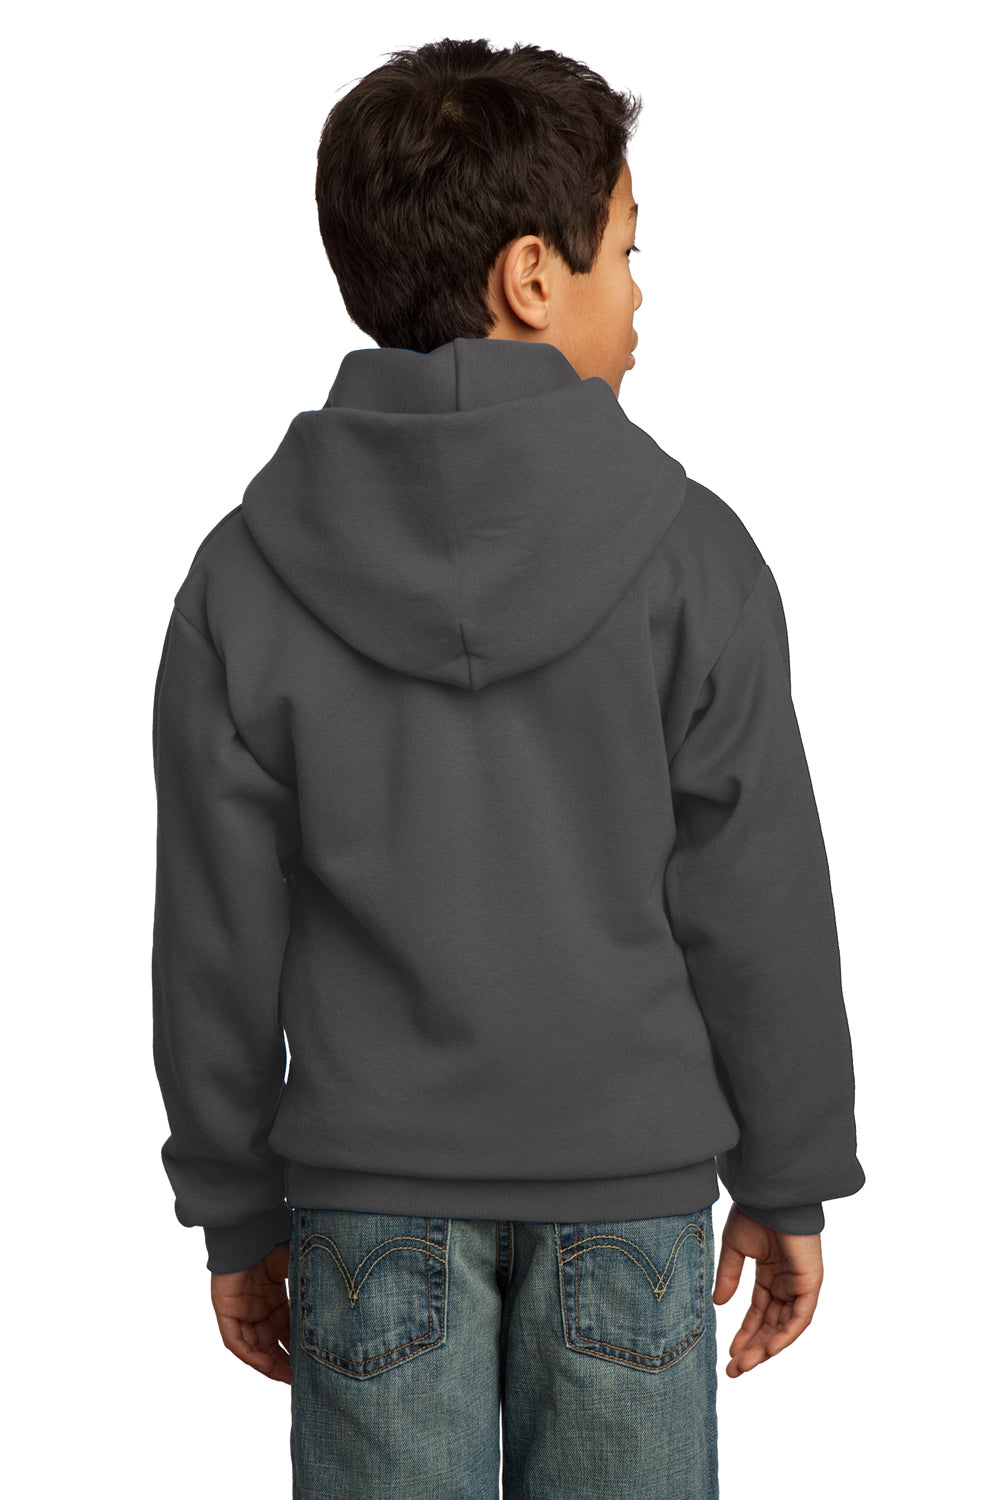 Port & Company PC90YH Youth Core Fleece Hooded Sweatshirt Hoodie Charcoal Grey Back